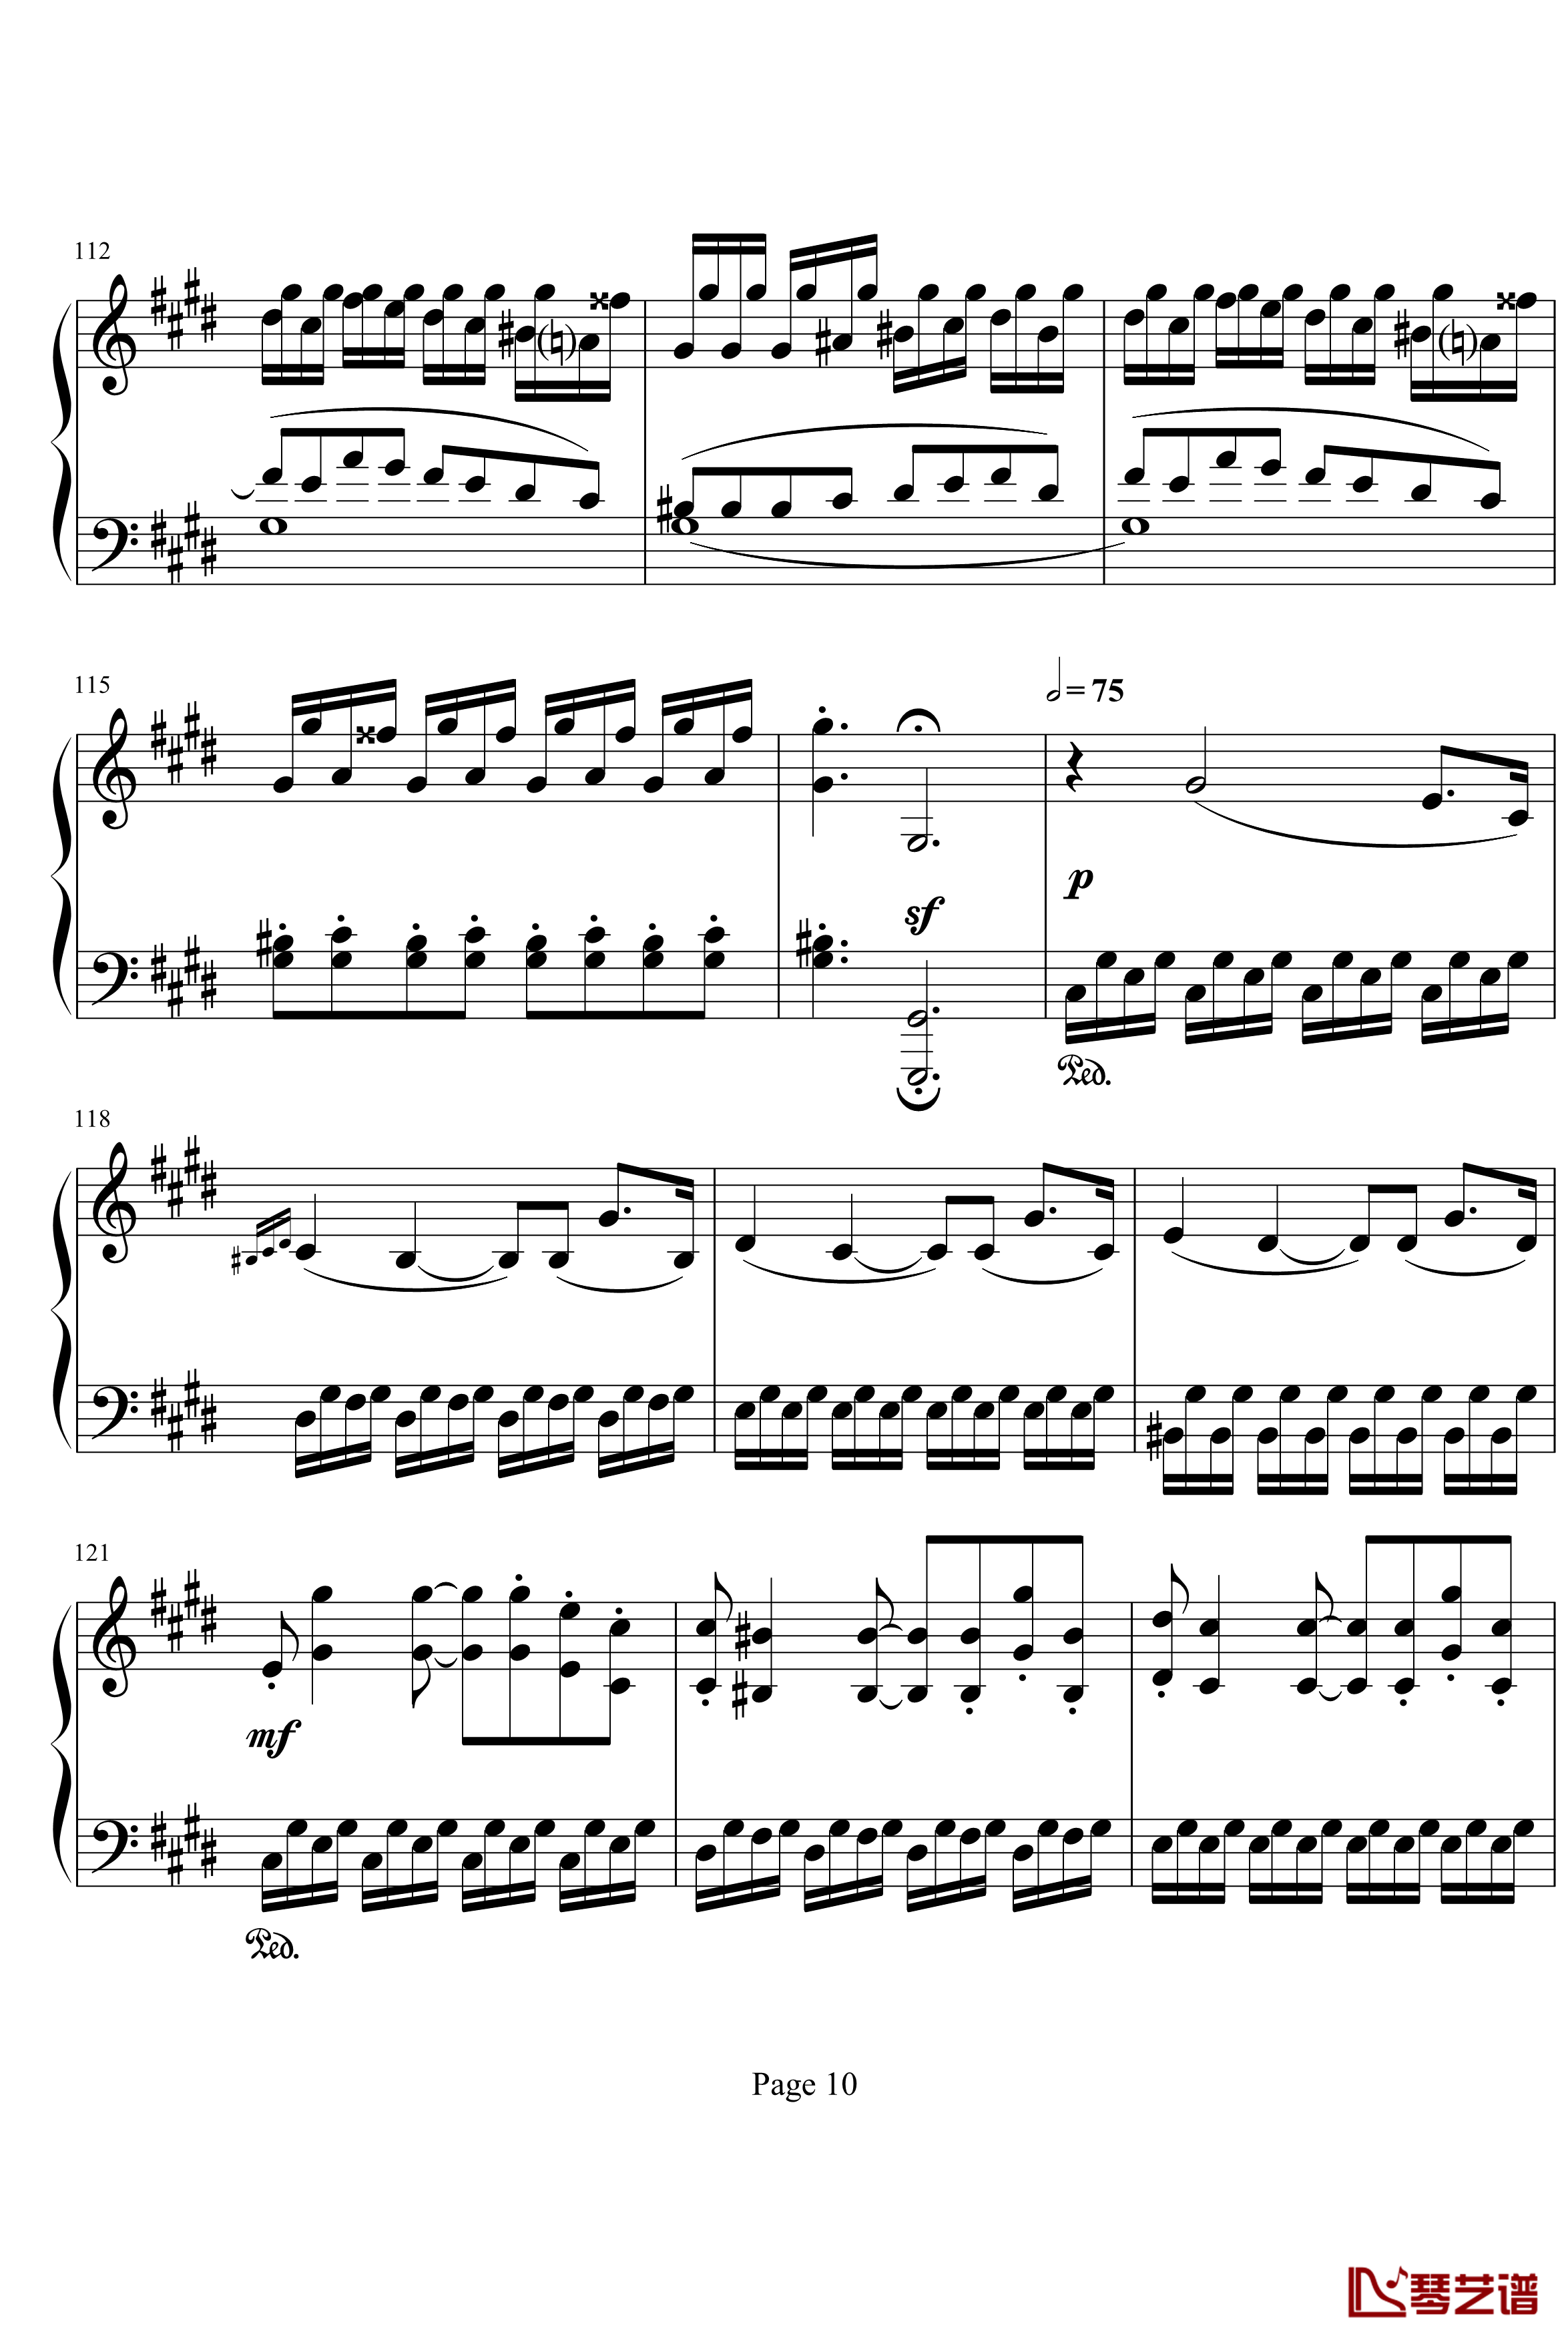 月光奏明曲钢琴谱-作品27之2-贝多芬-beethoven10